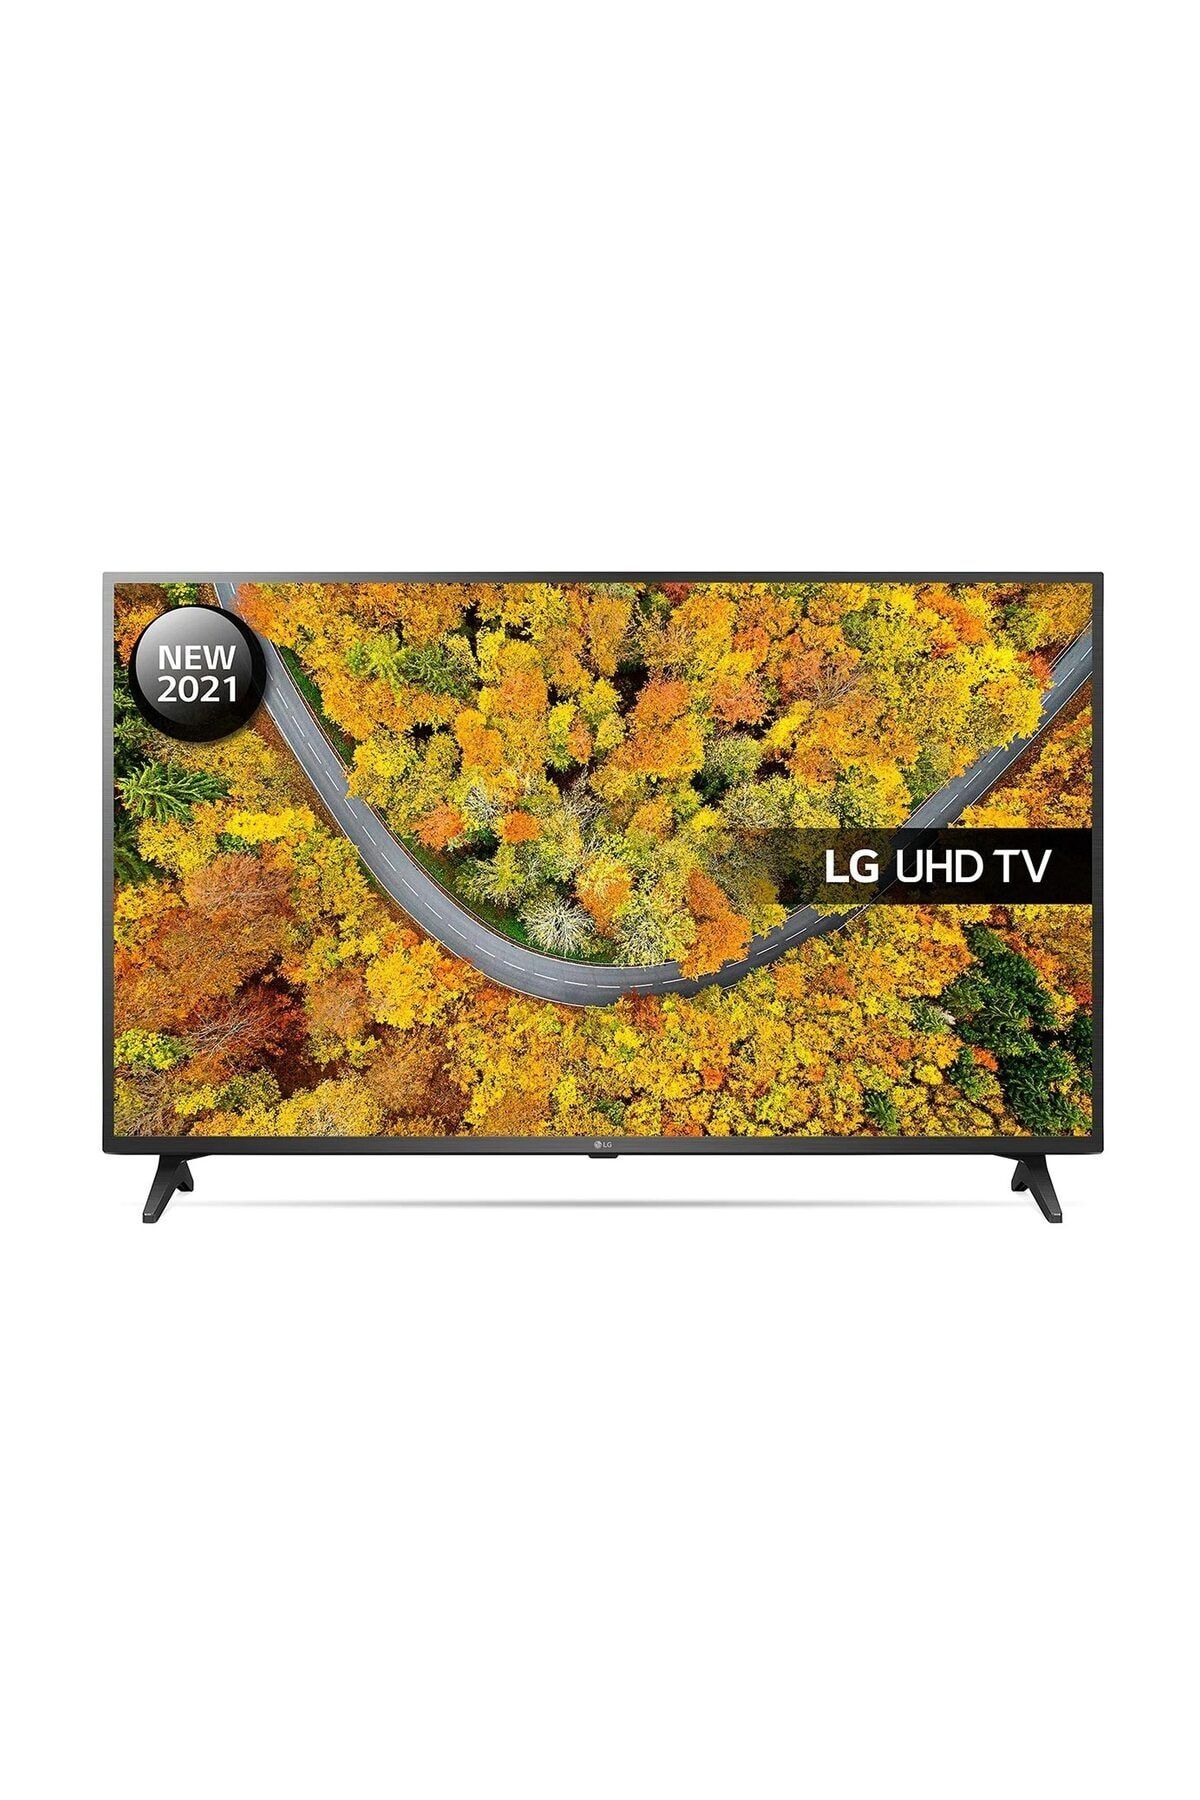 LG 55UP75006 55" 139 Ekran Uydu Alıcılı 4K Ultra HD Smart LED TV